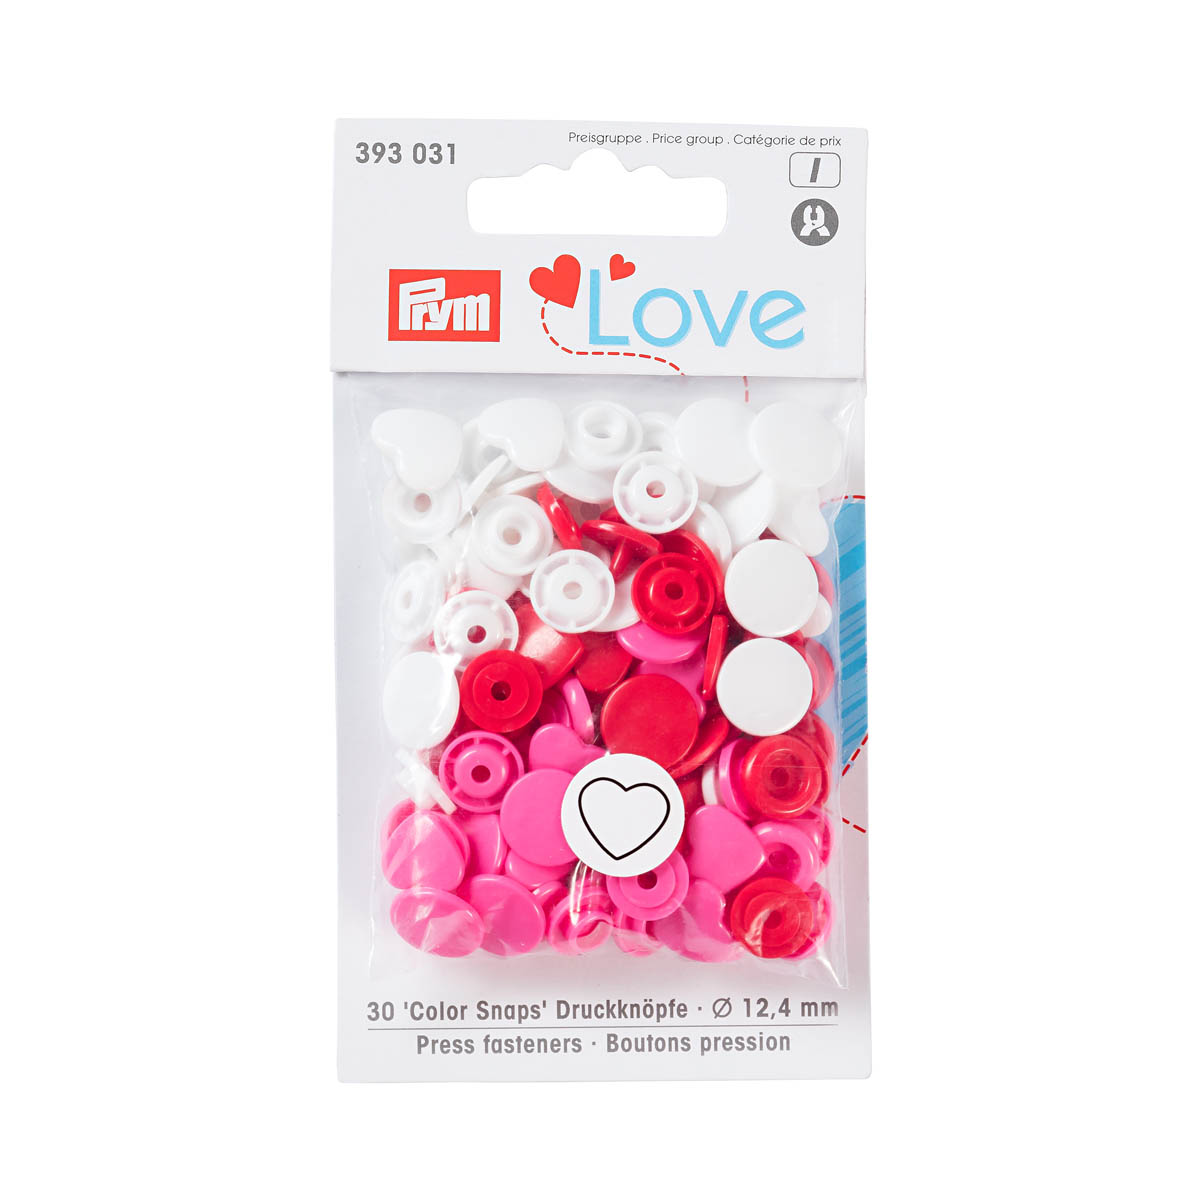 393031 Кнопки 'Сердце' Color Snaps Prym Love, красный/белый/розовый, 12мм, 30шт Prym